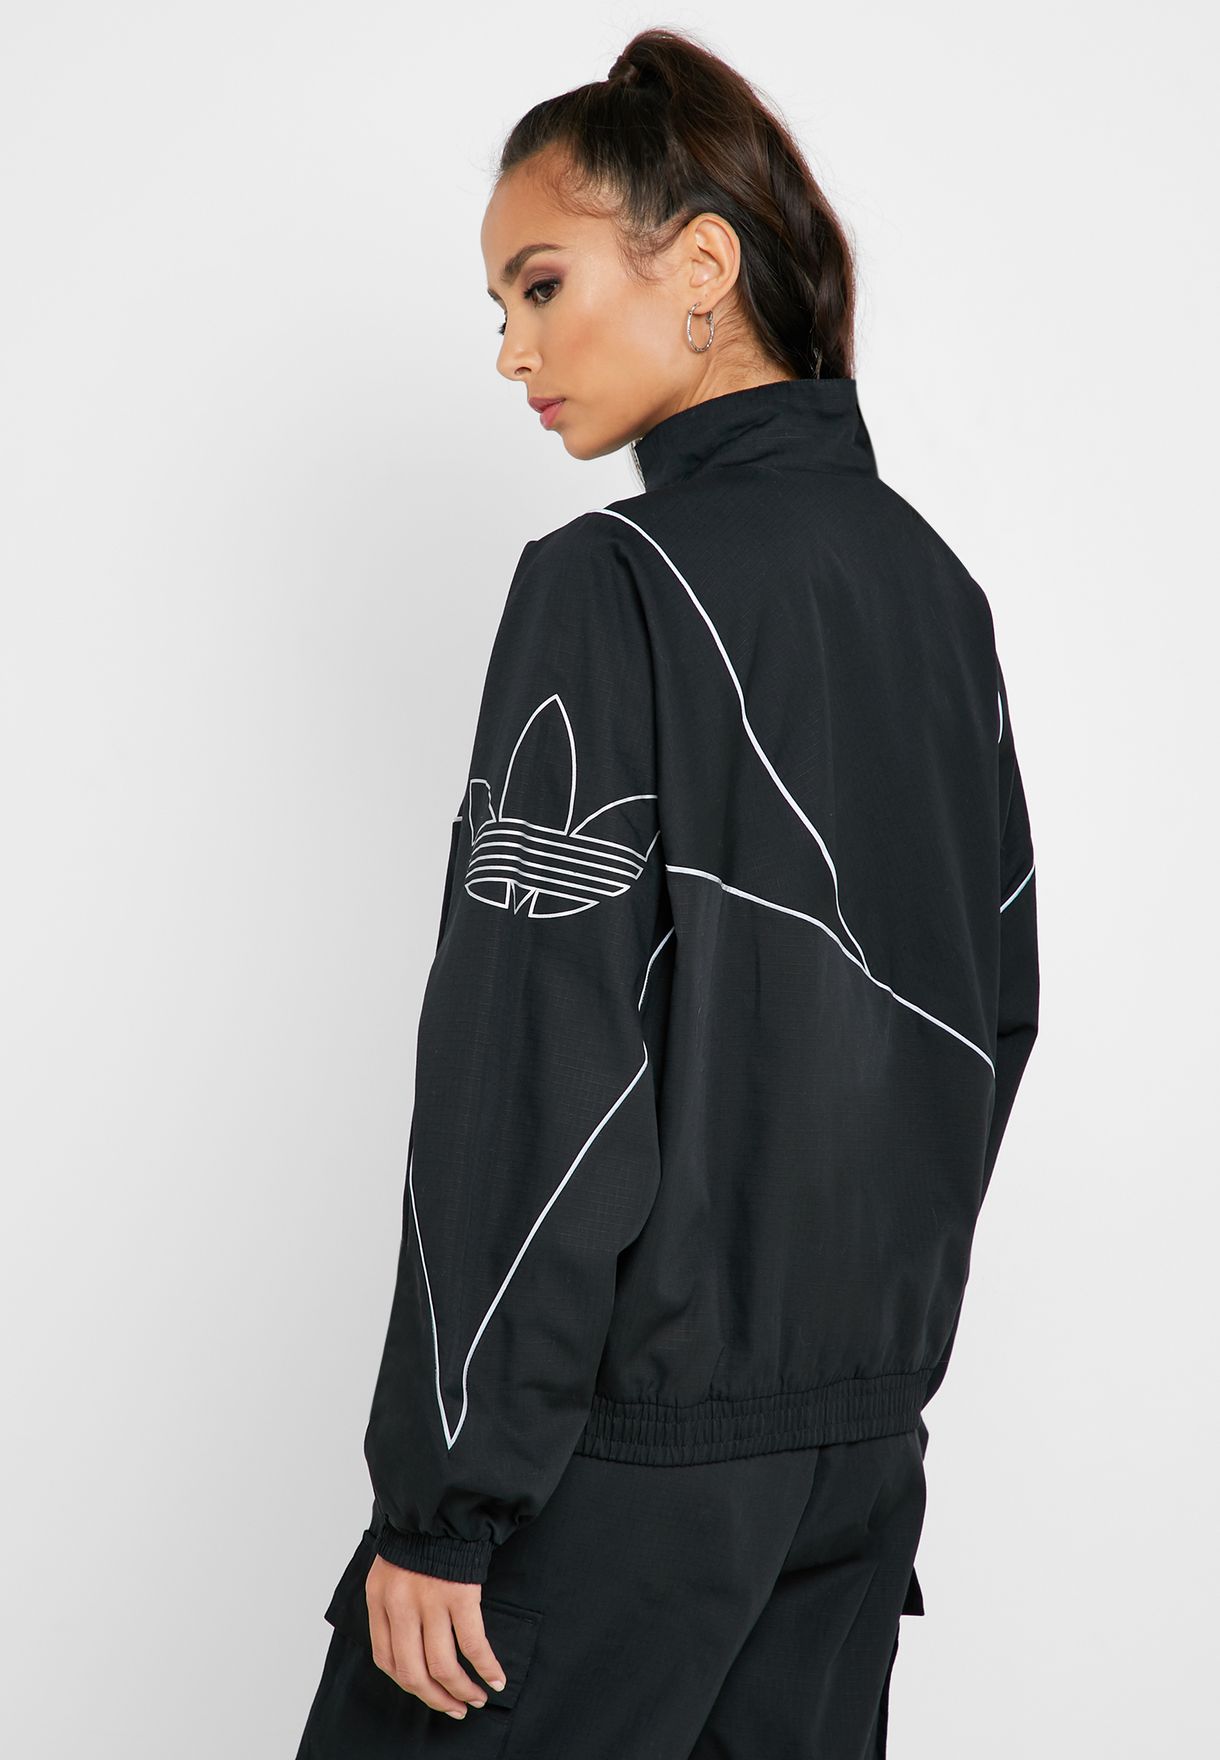 adidas reflective track jacket